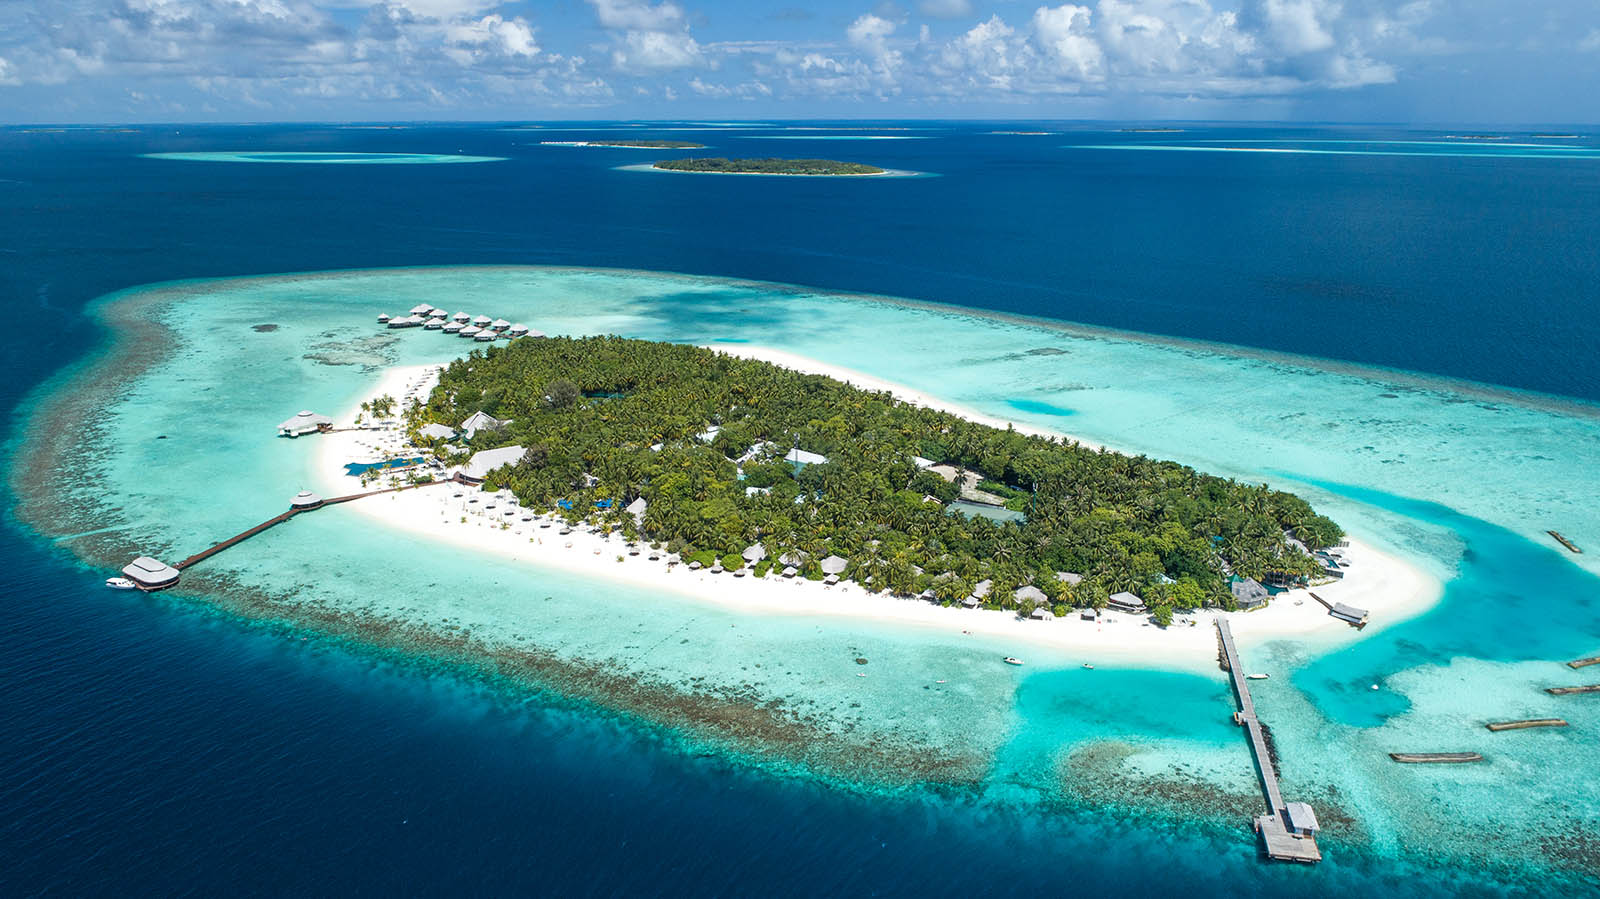 Kihaa Maldives Resort island